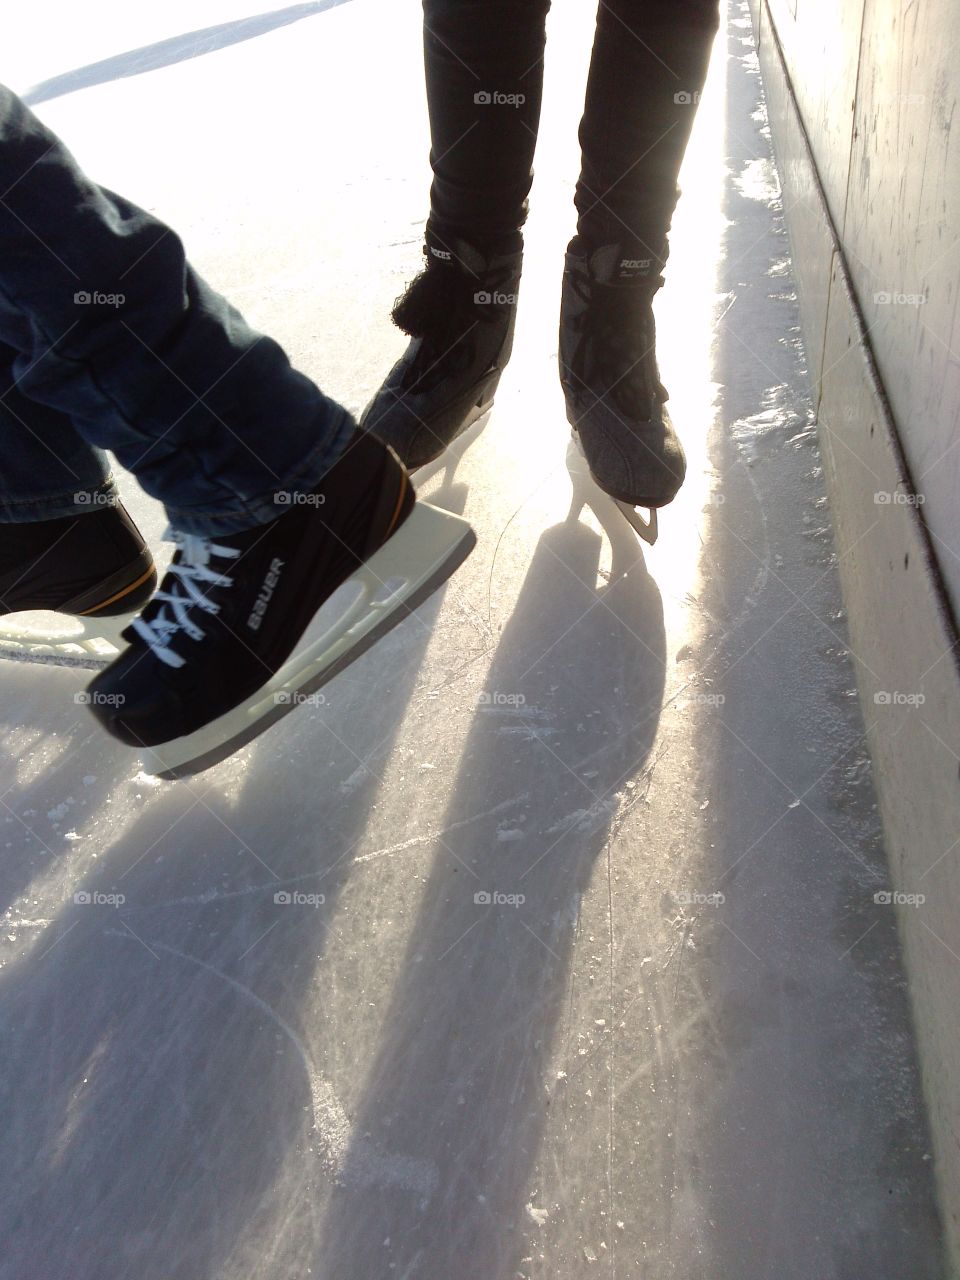 let's skate